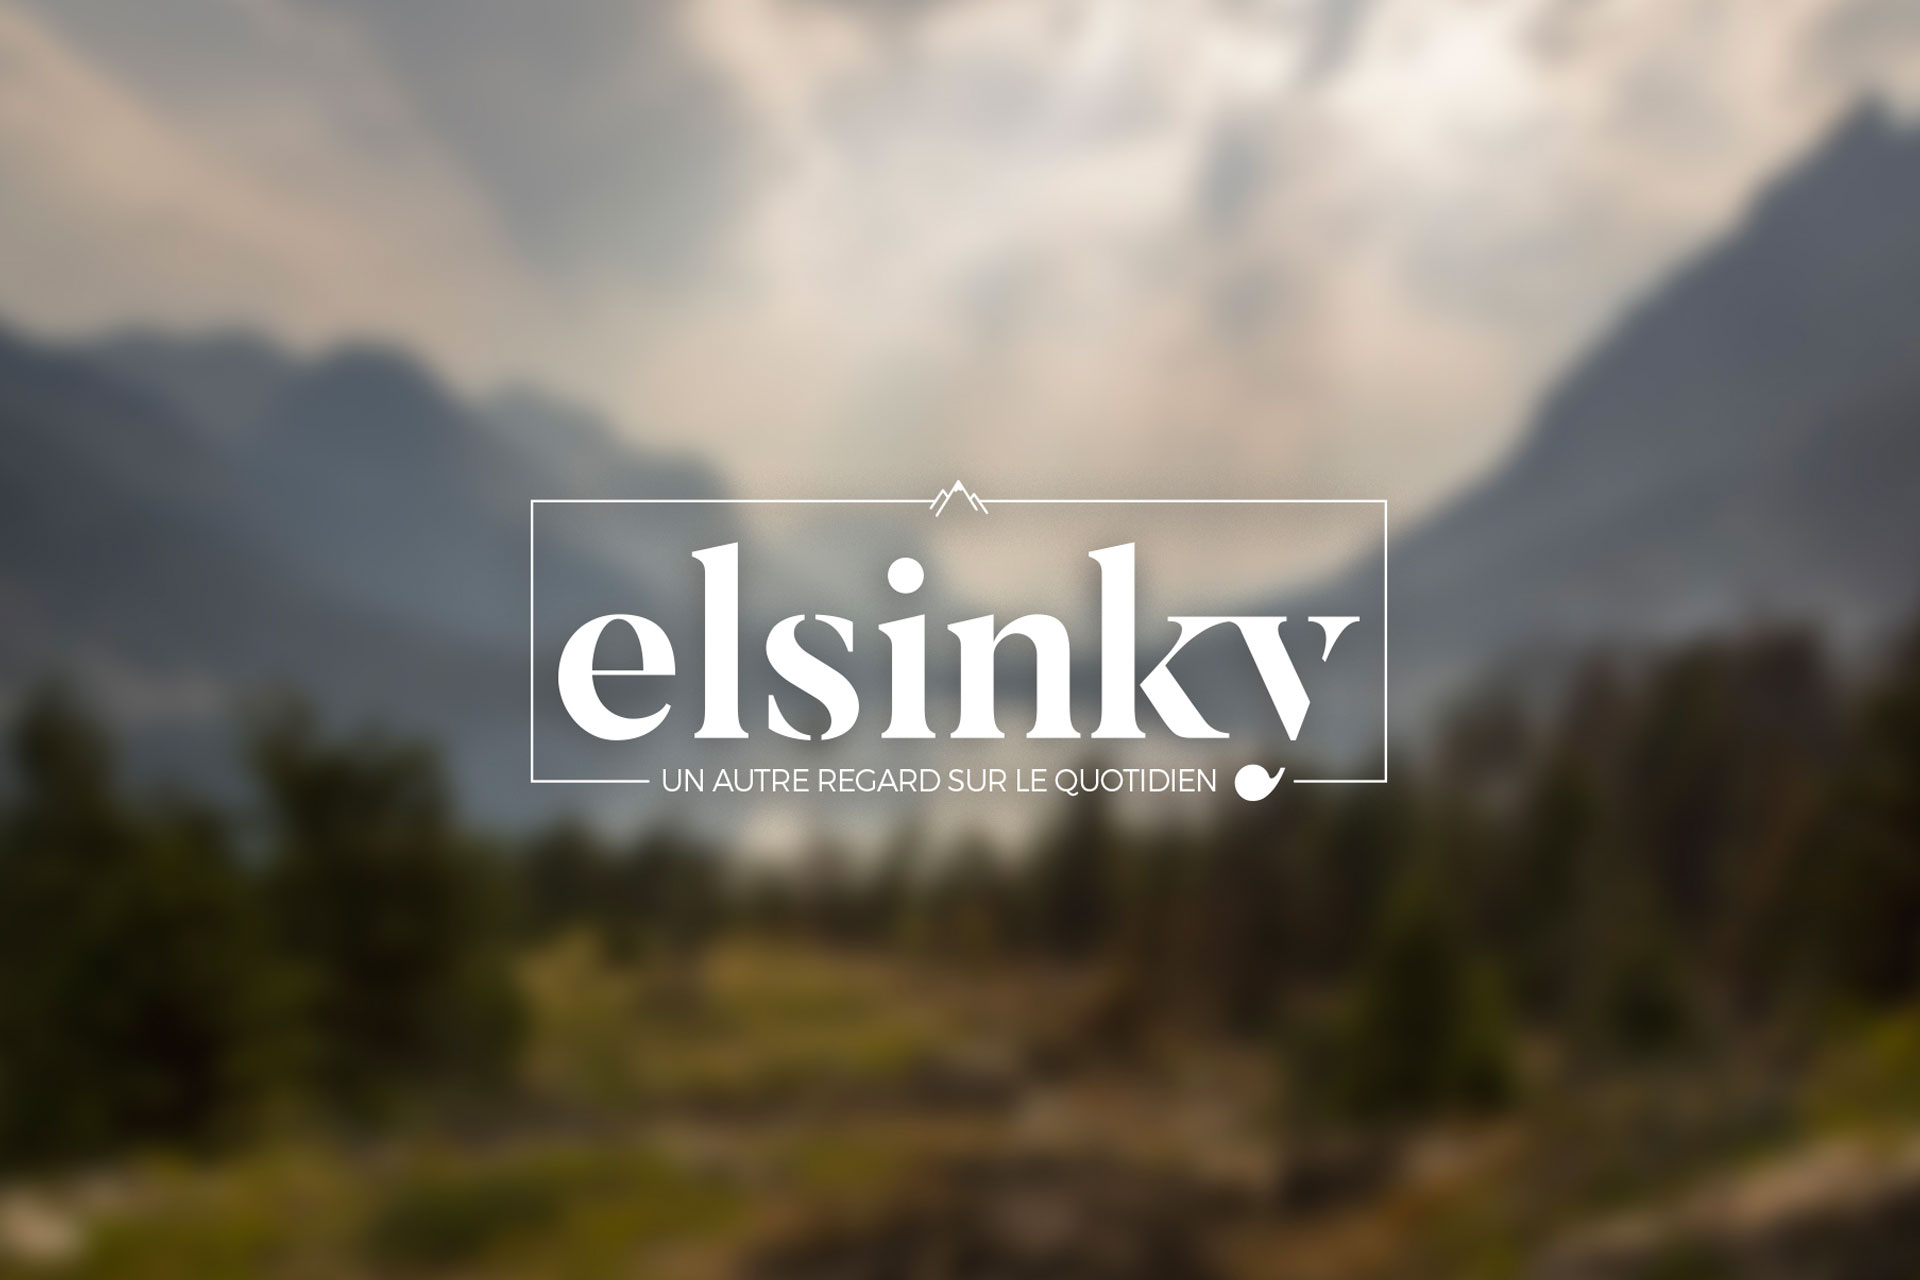 Création de l'identité graphique / logo de l'entreprise Elsinky à Rennes